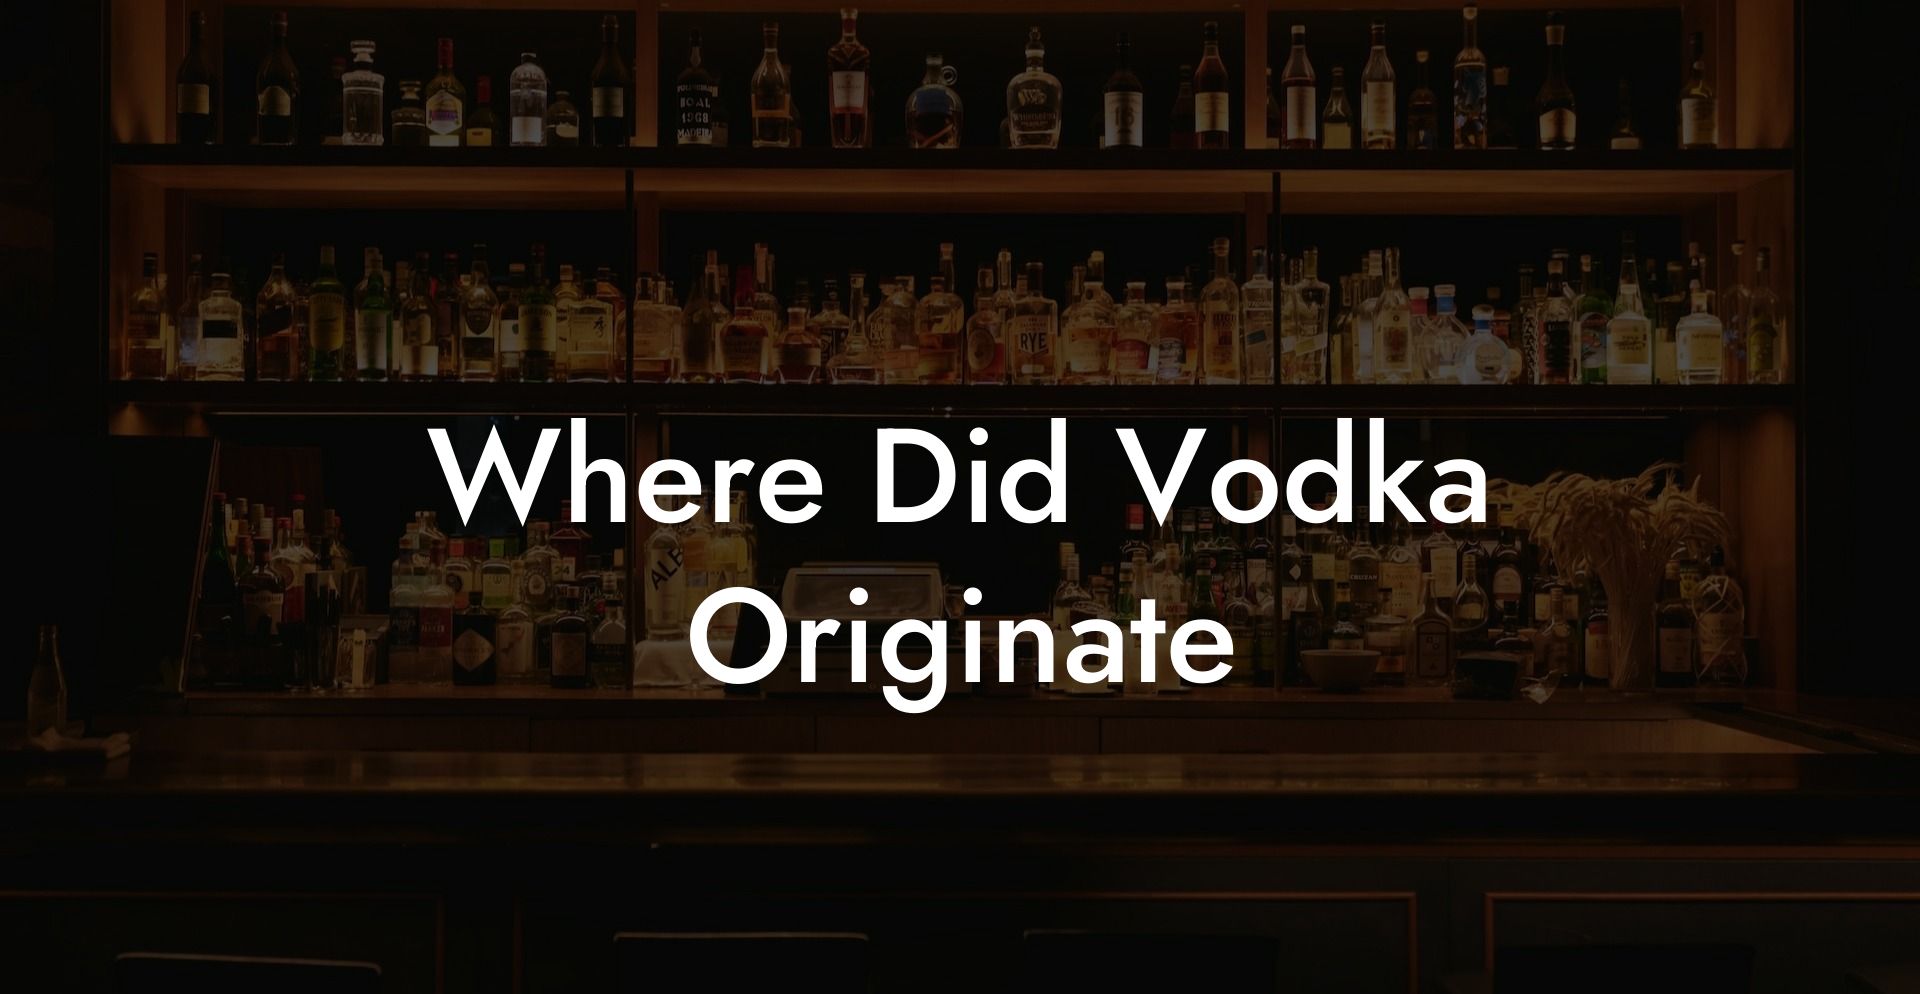 Where Did Vodka Originate